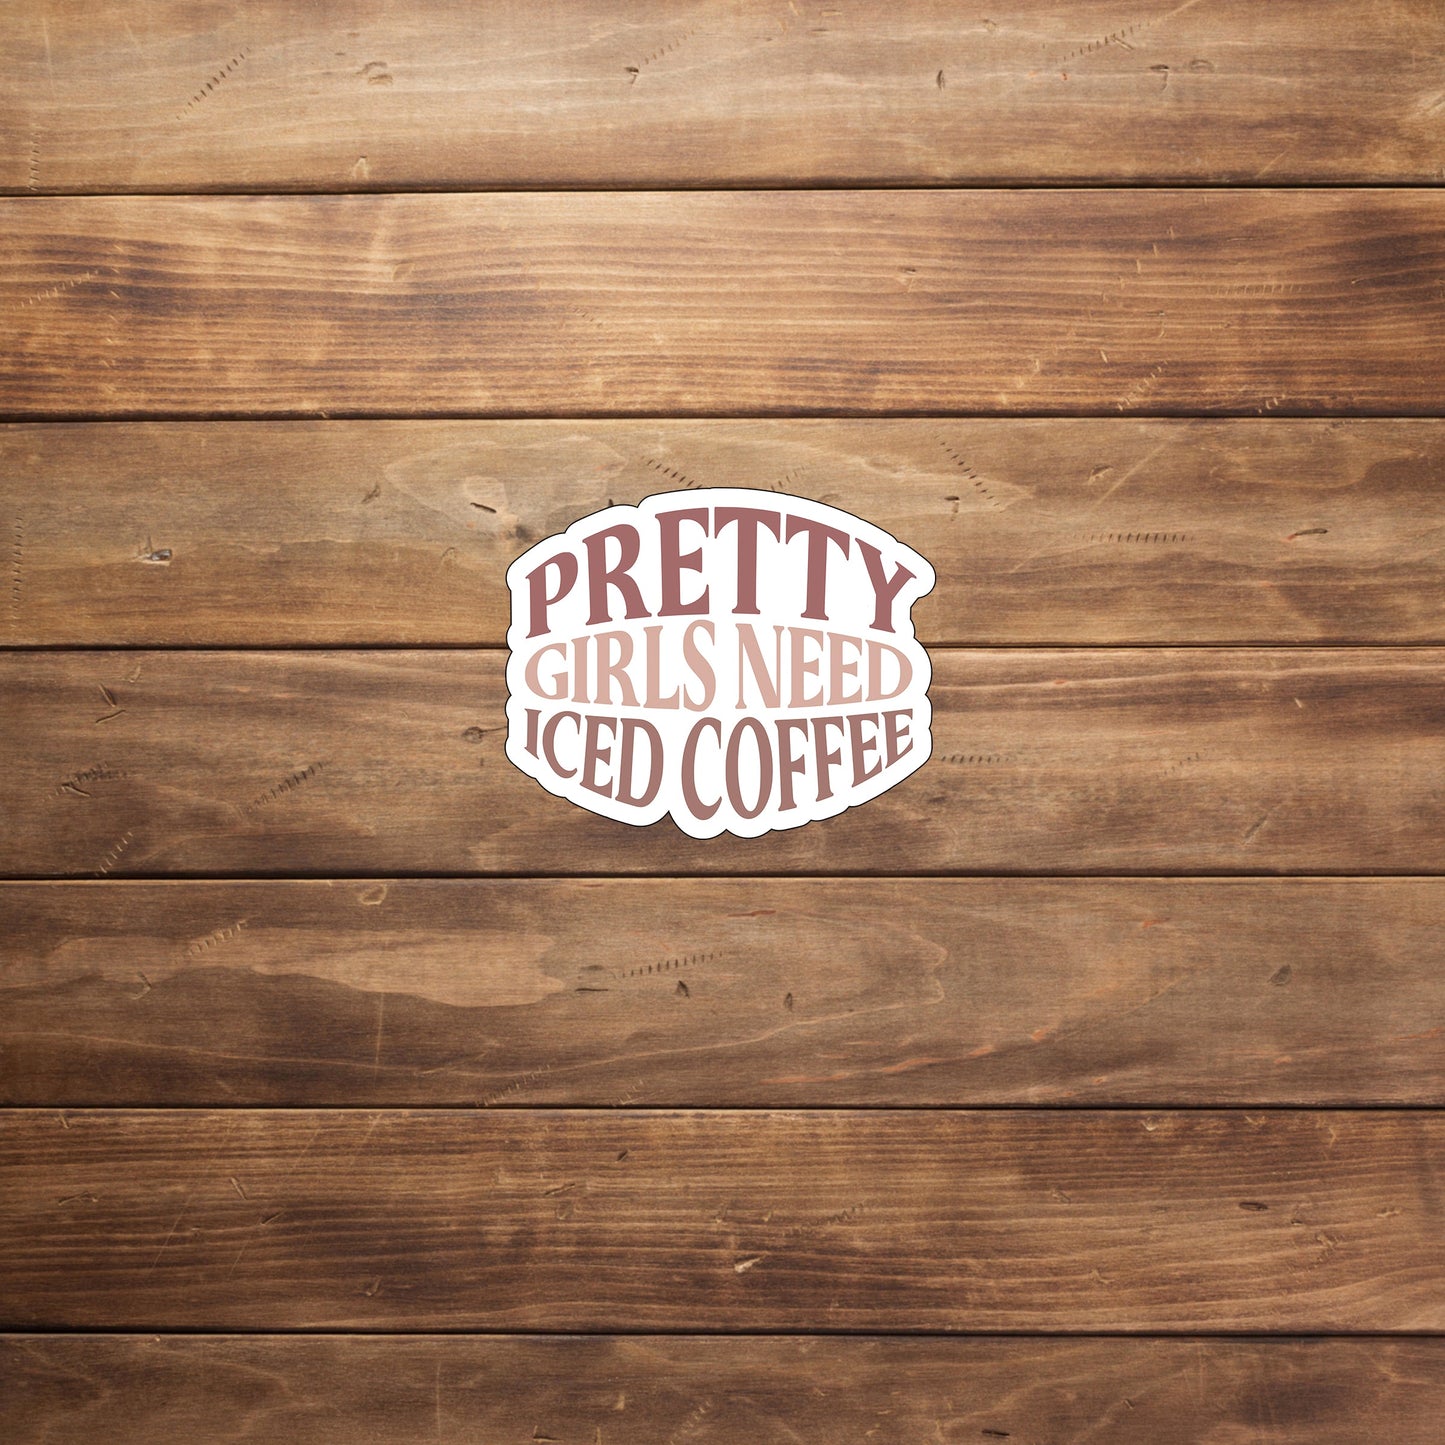 prettygirlsneedicedcoffee  Sticker,  Vinyl sticker, laptop sticker, Tablet sticker